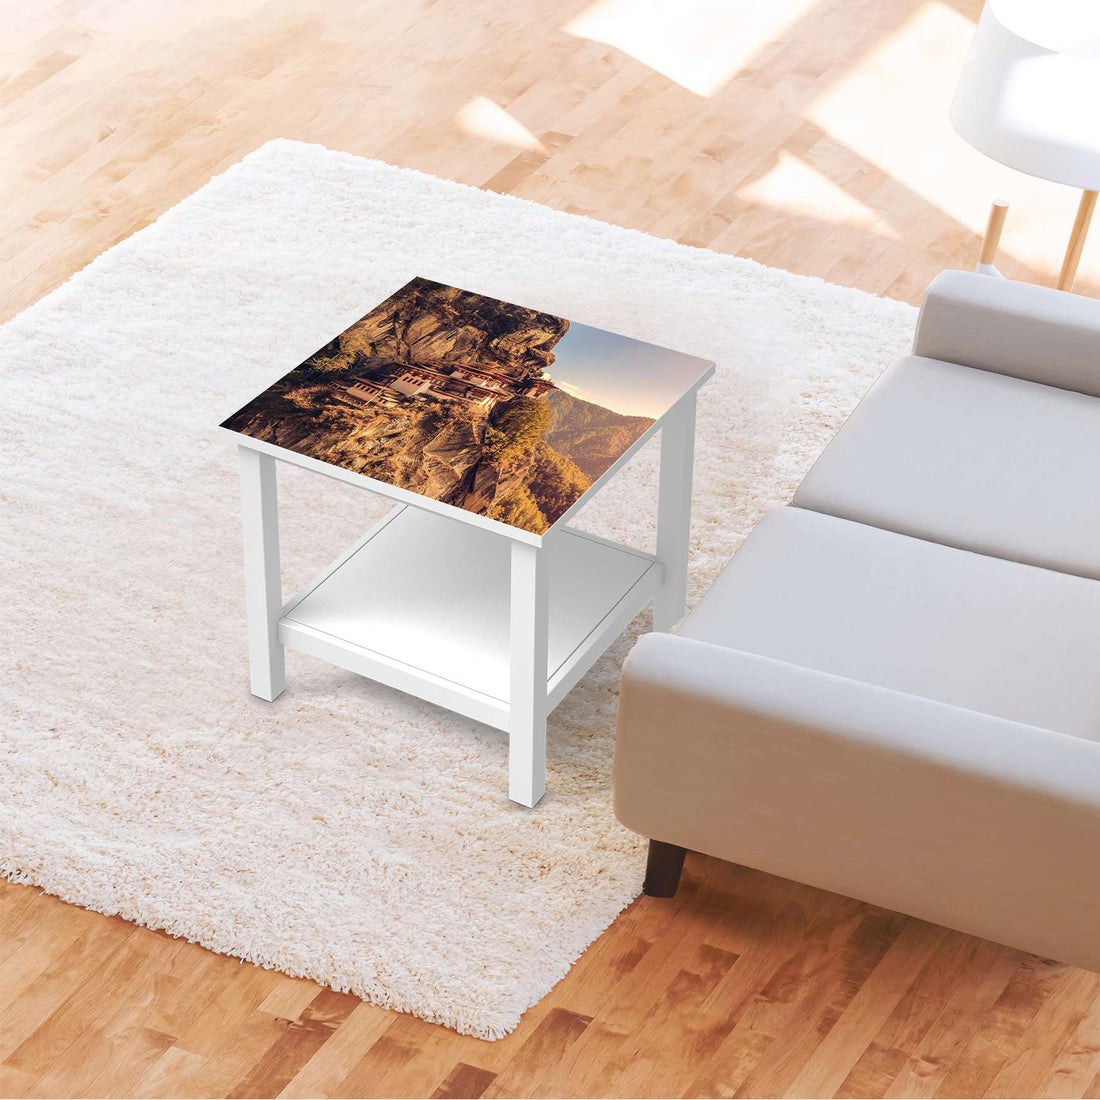 Möbel Klebefolie Bhutans Paradise - IKEA Hemnes Beistelltisch 55x55 cm - Wohnzimmer